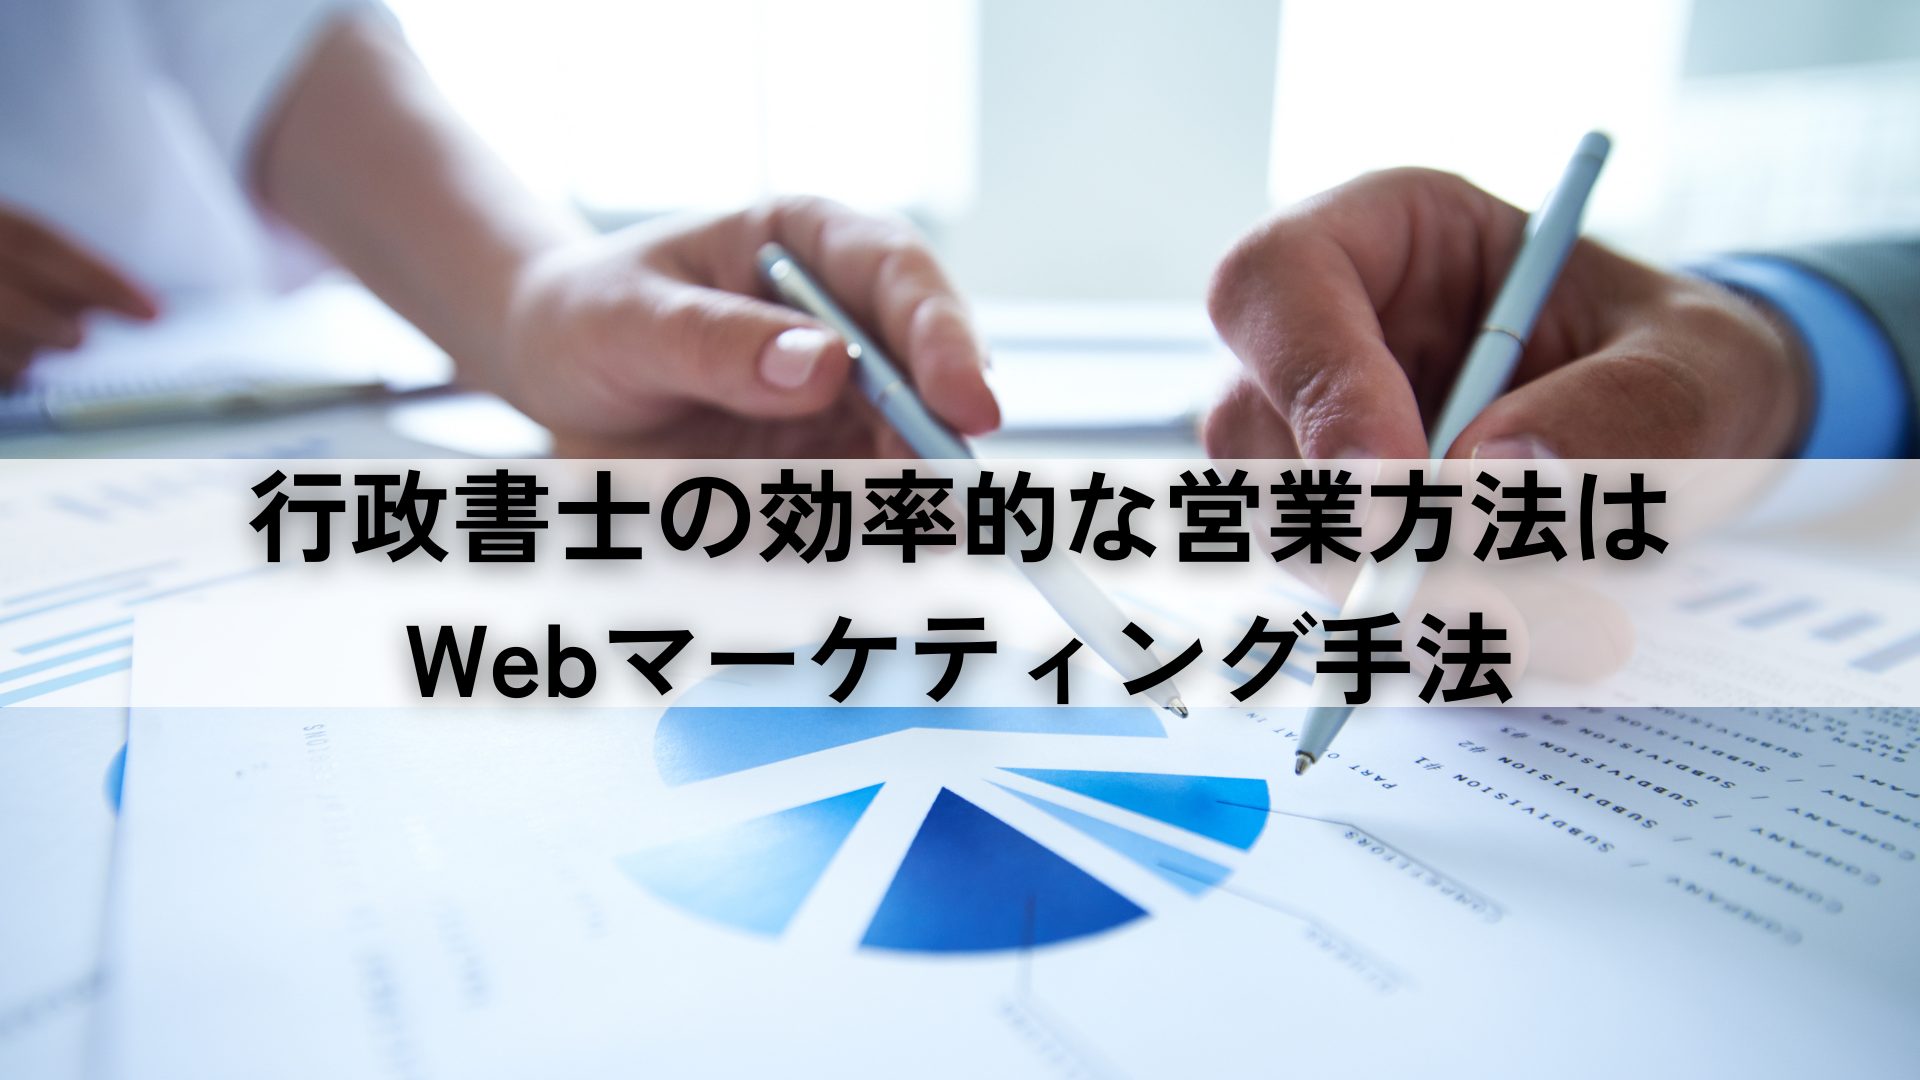 行政書士の効率的な営業方法はWebマーケティング手法